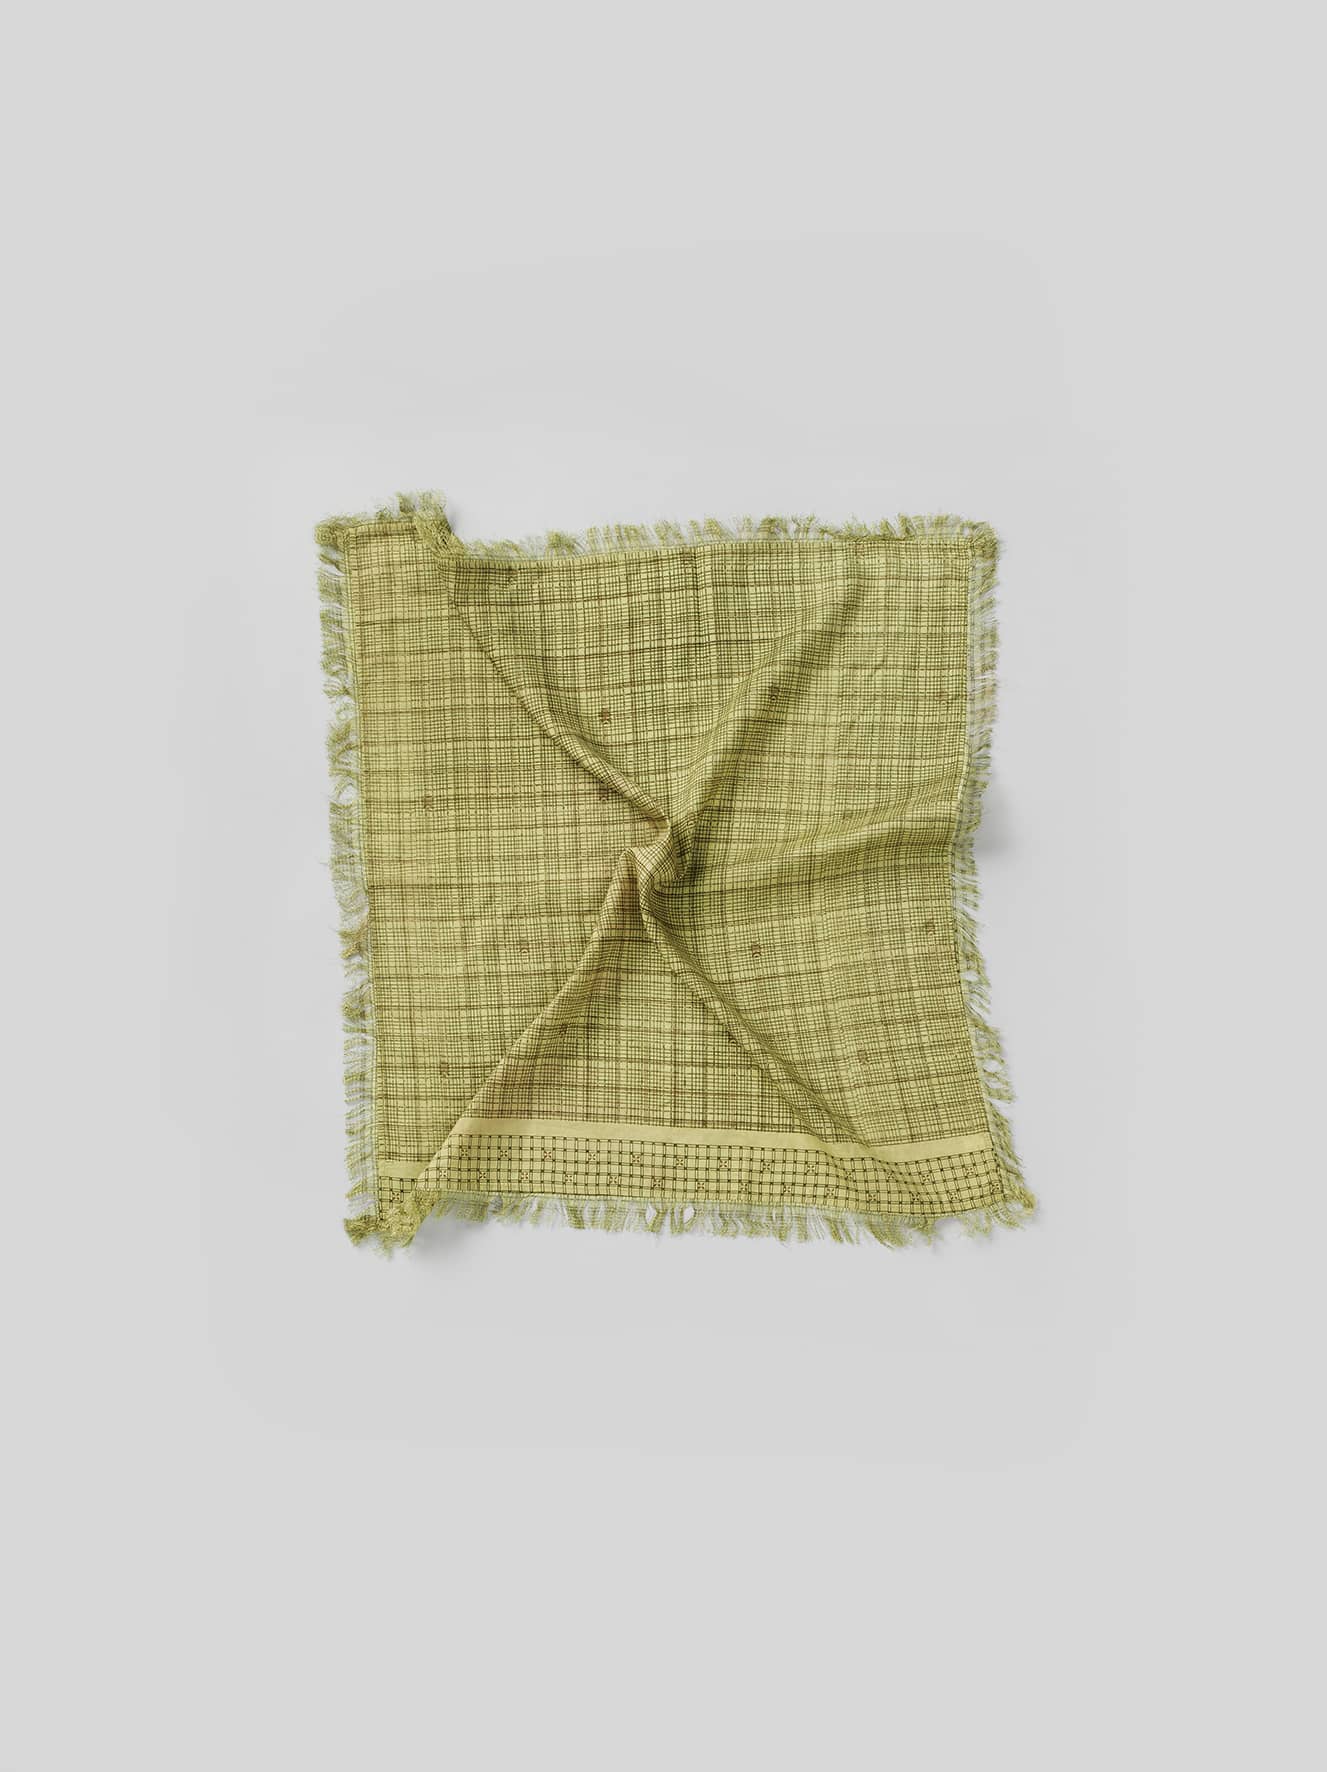 Goa sari scarf - Green tones